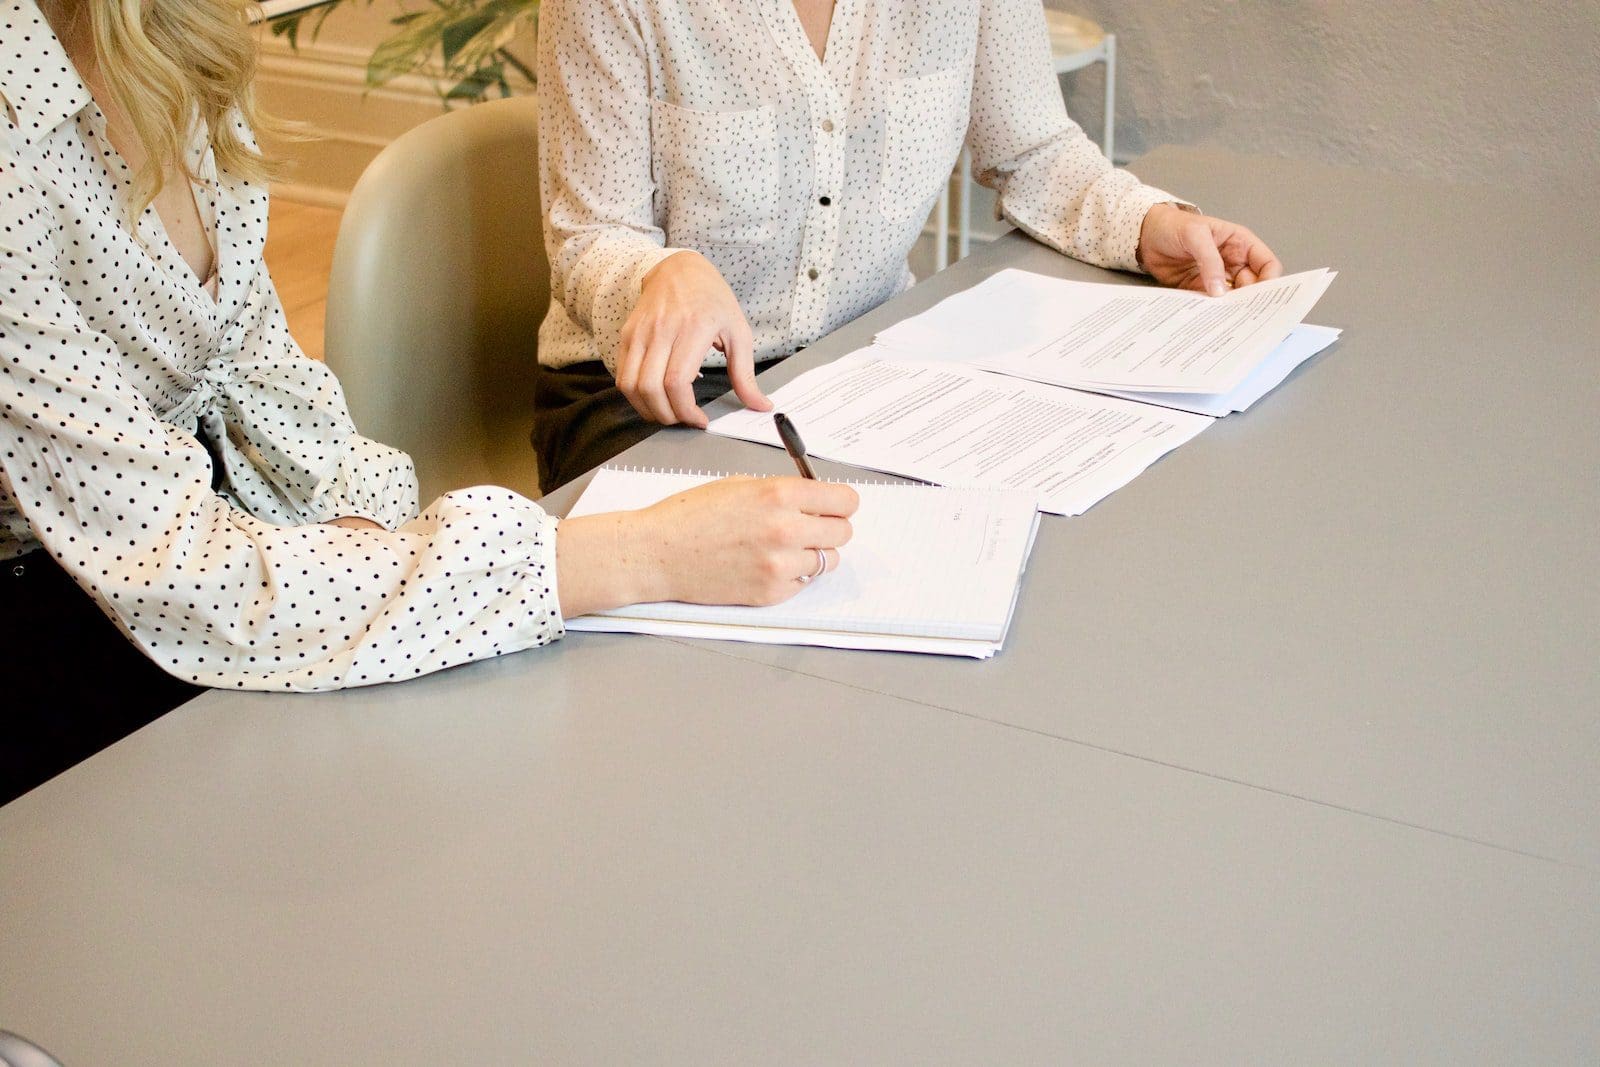 दस्तावेजों को छूने वाली महिला के बगल में सफेद प्रिंटर पेपर पर हस्ताक्षर करती महिला